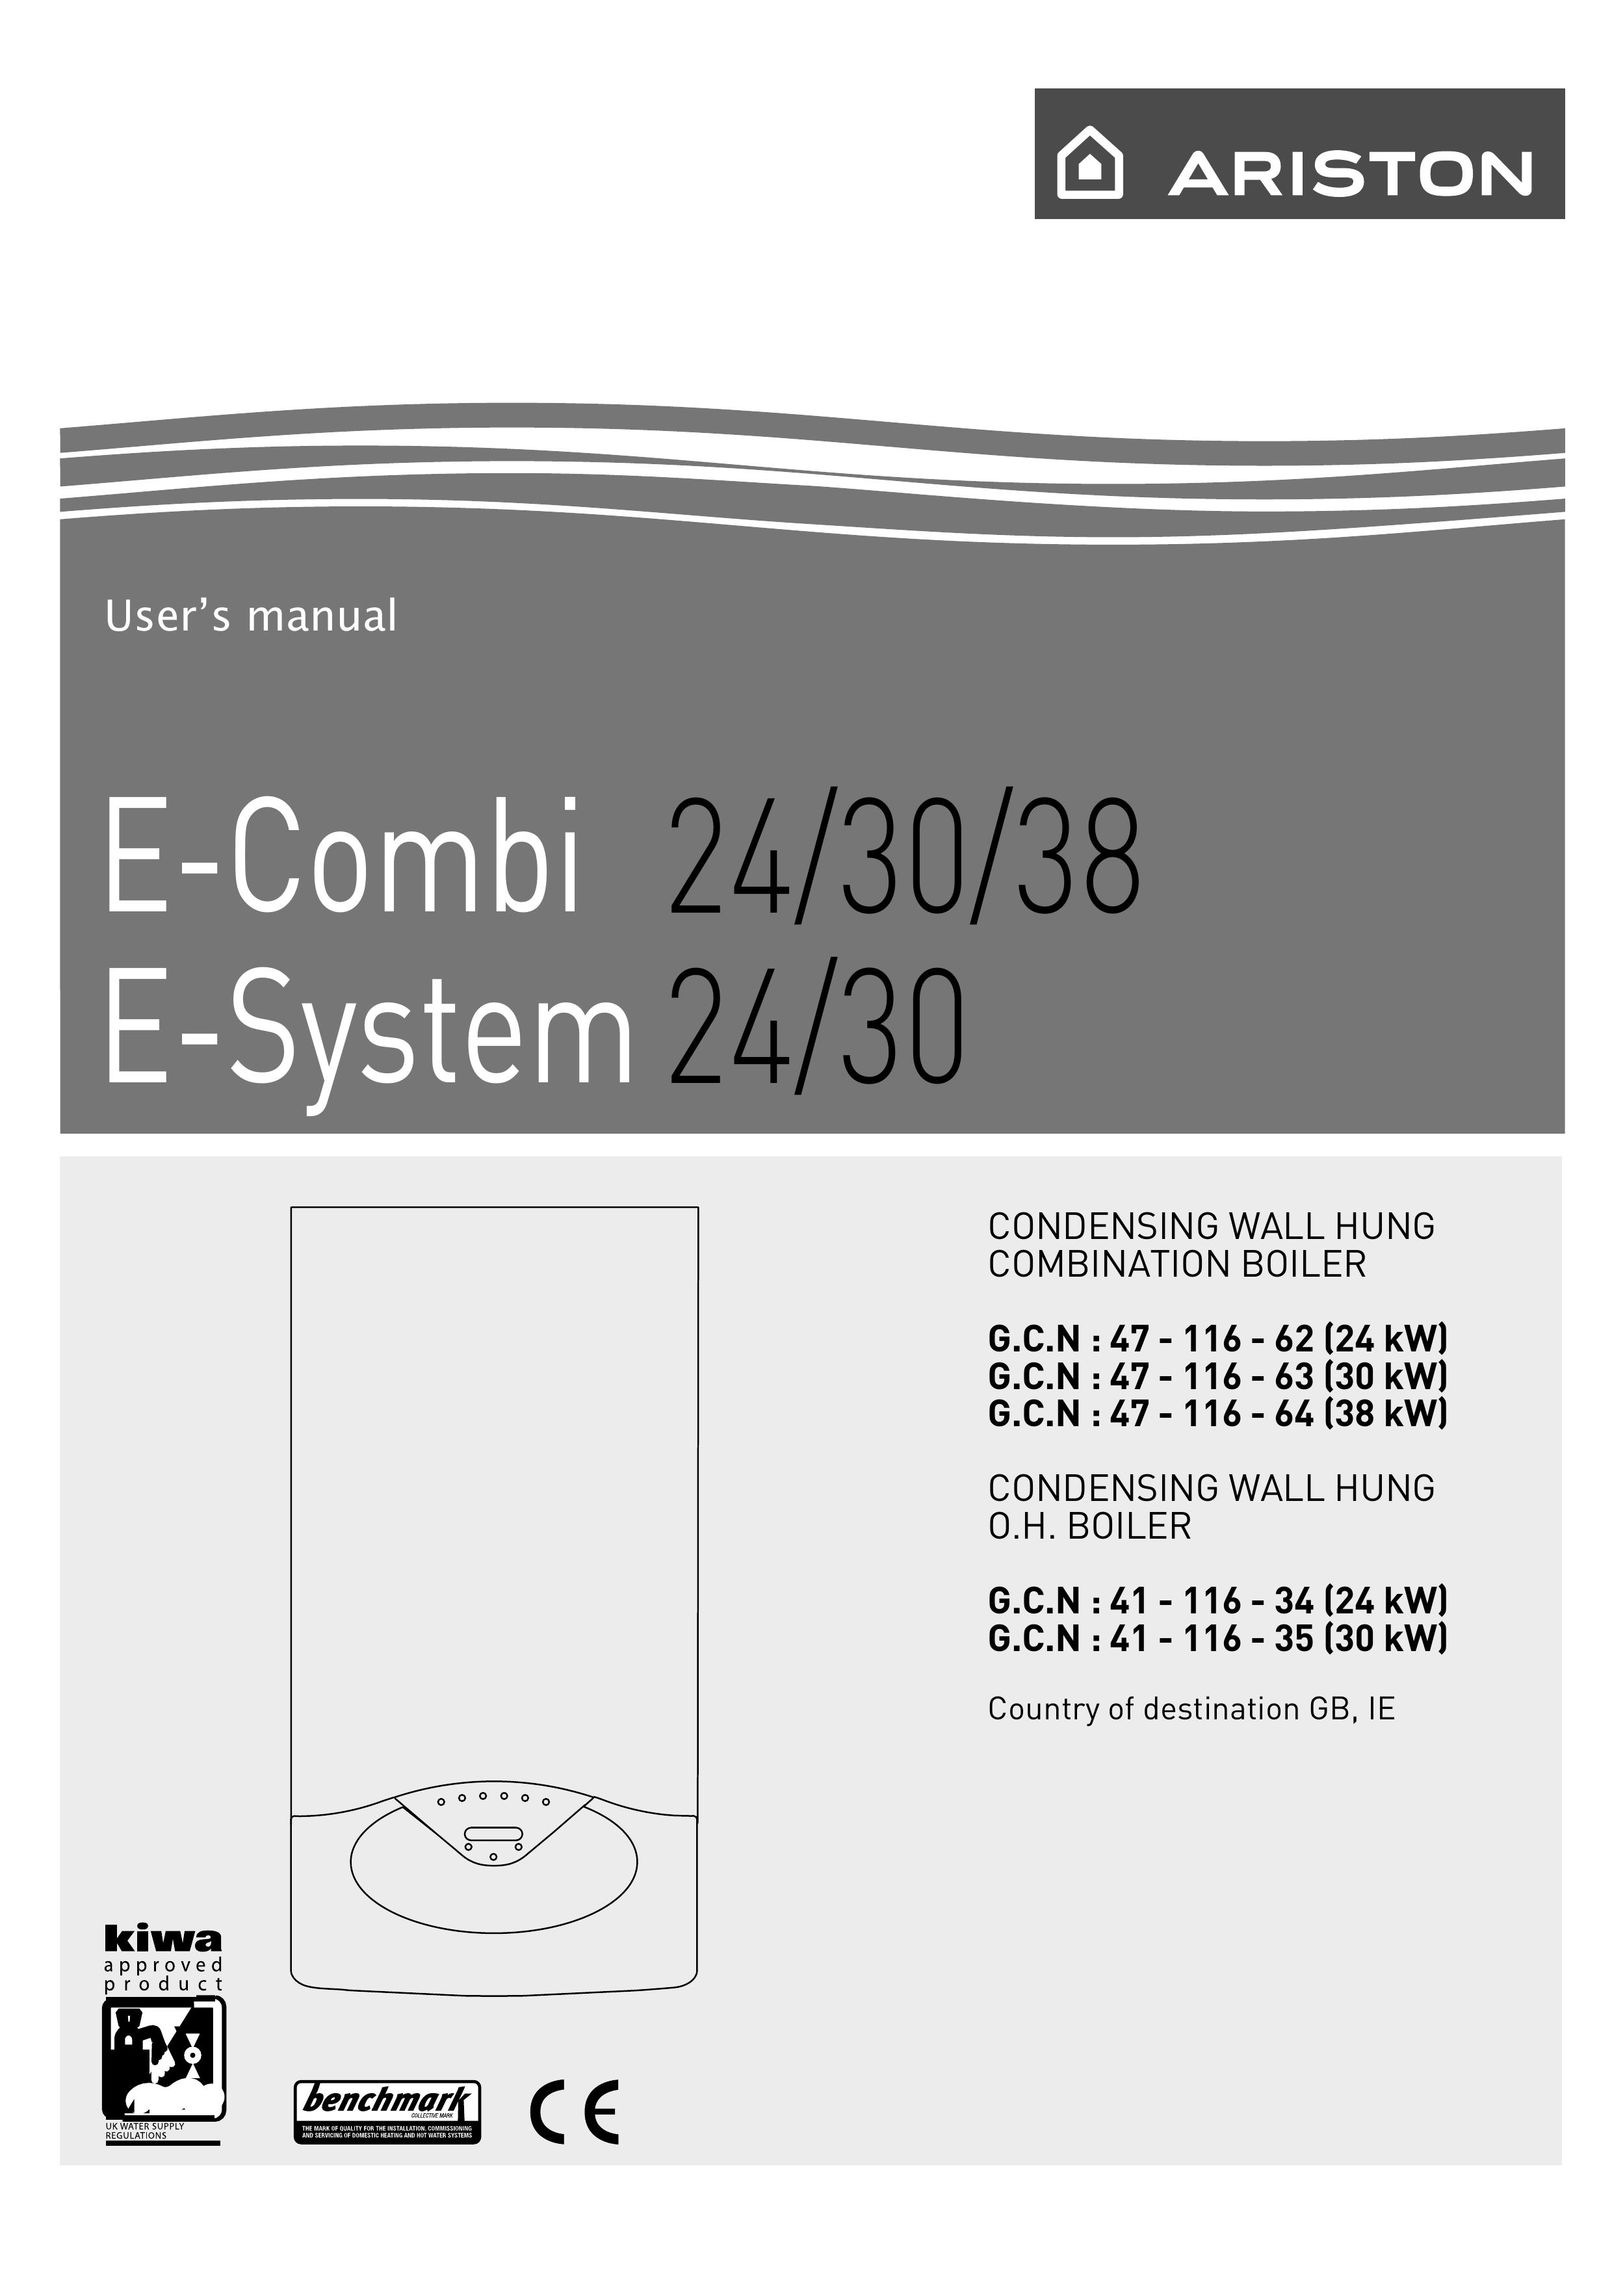 Ariston 41 - 116 - 35 Boiler User Manual (Page 1)